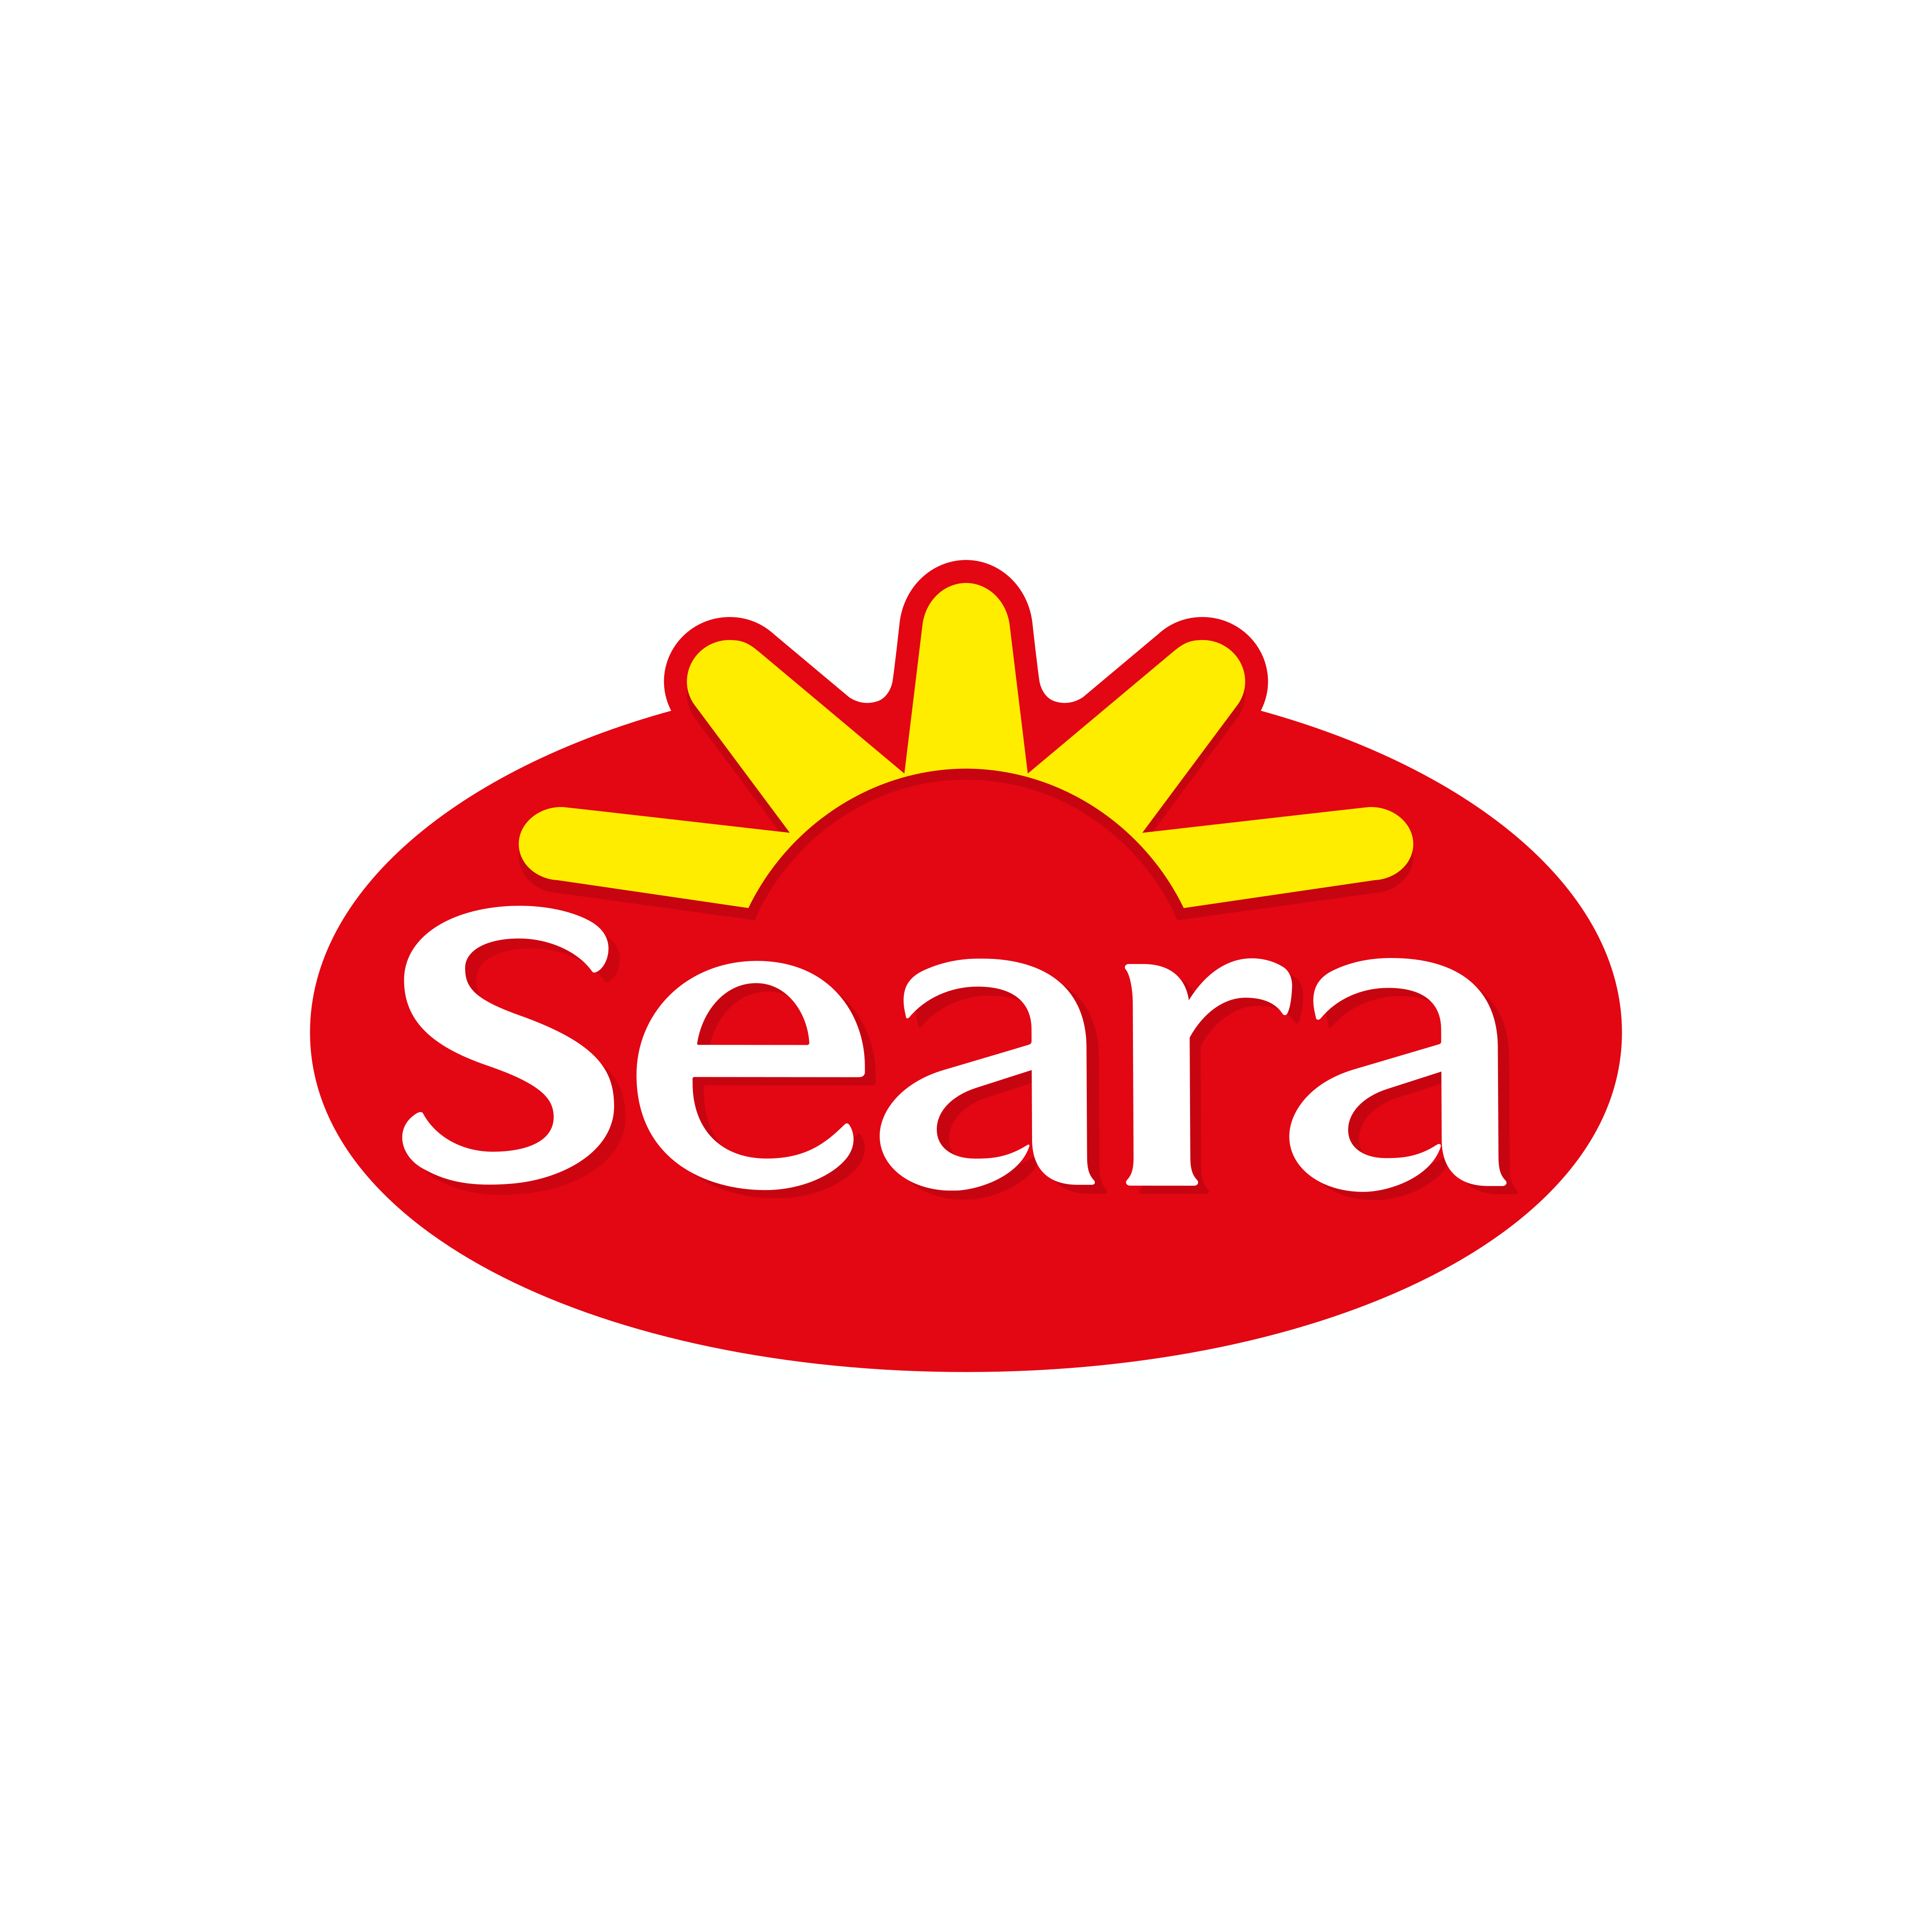 Seara Logo PNG.